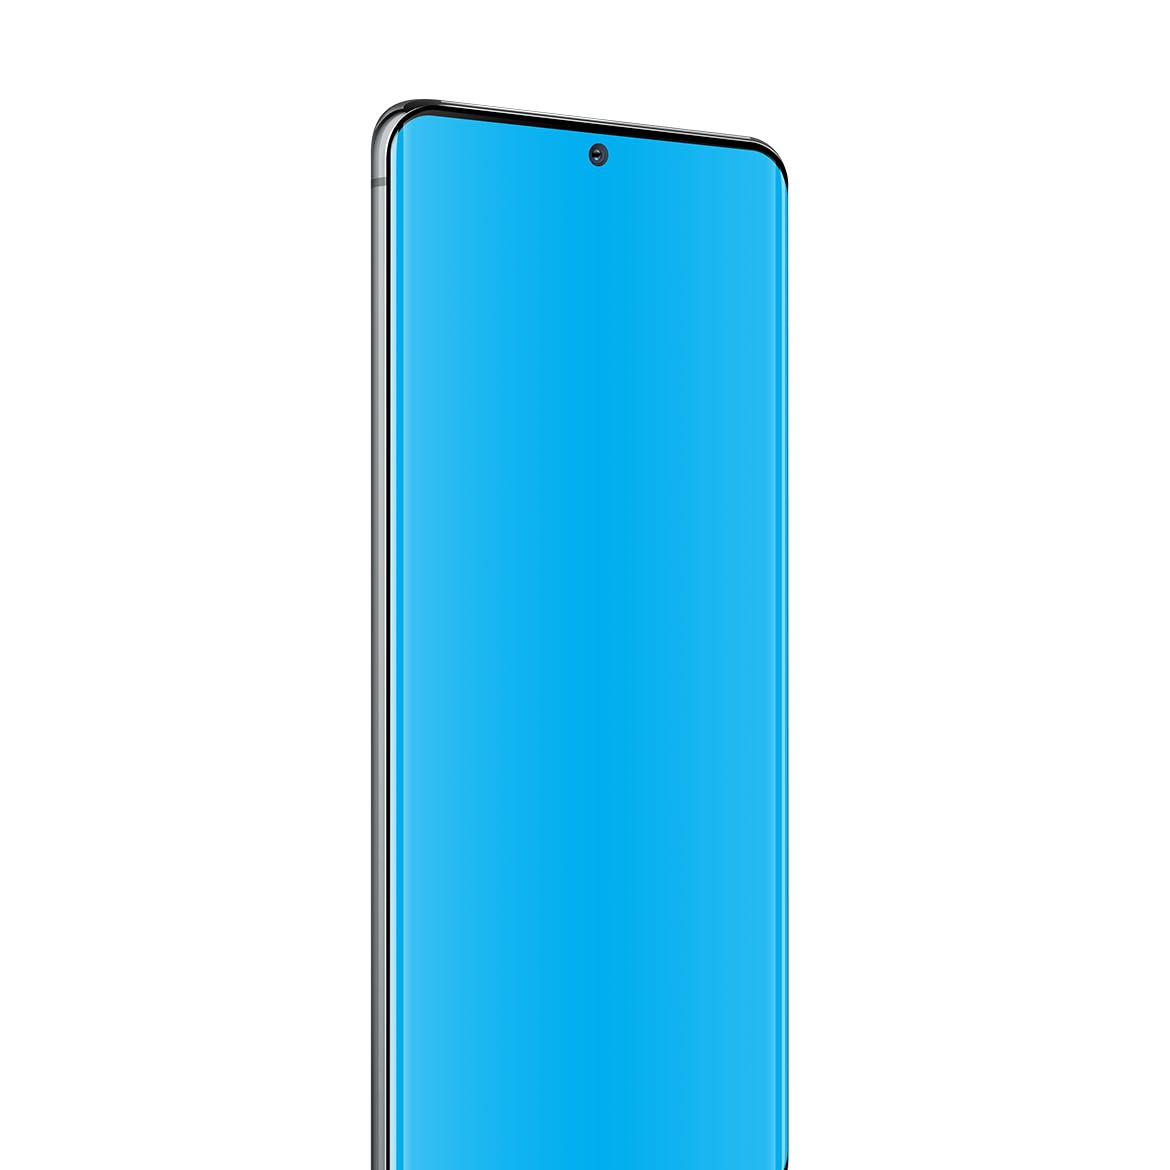 三星Galaxy S20 Ultra智能手机UI设计屏幕预览大洋岛精选样机 S20 Ultra Layered PSD Mockups插图3